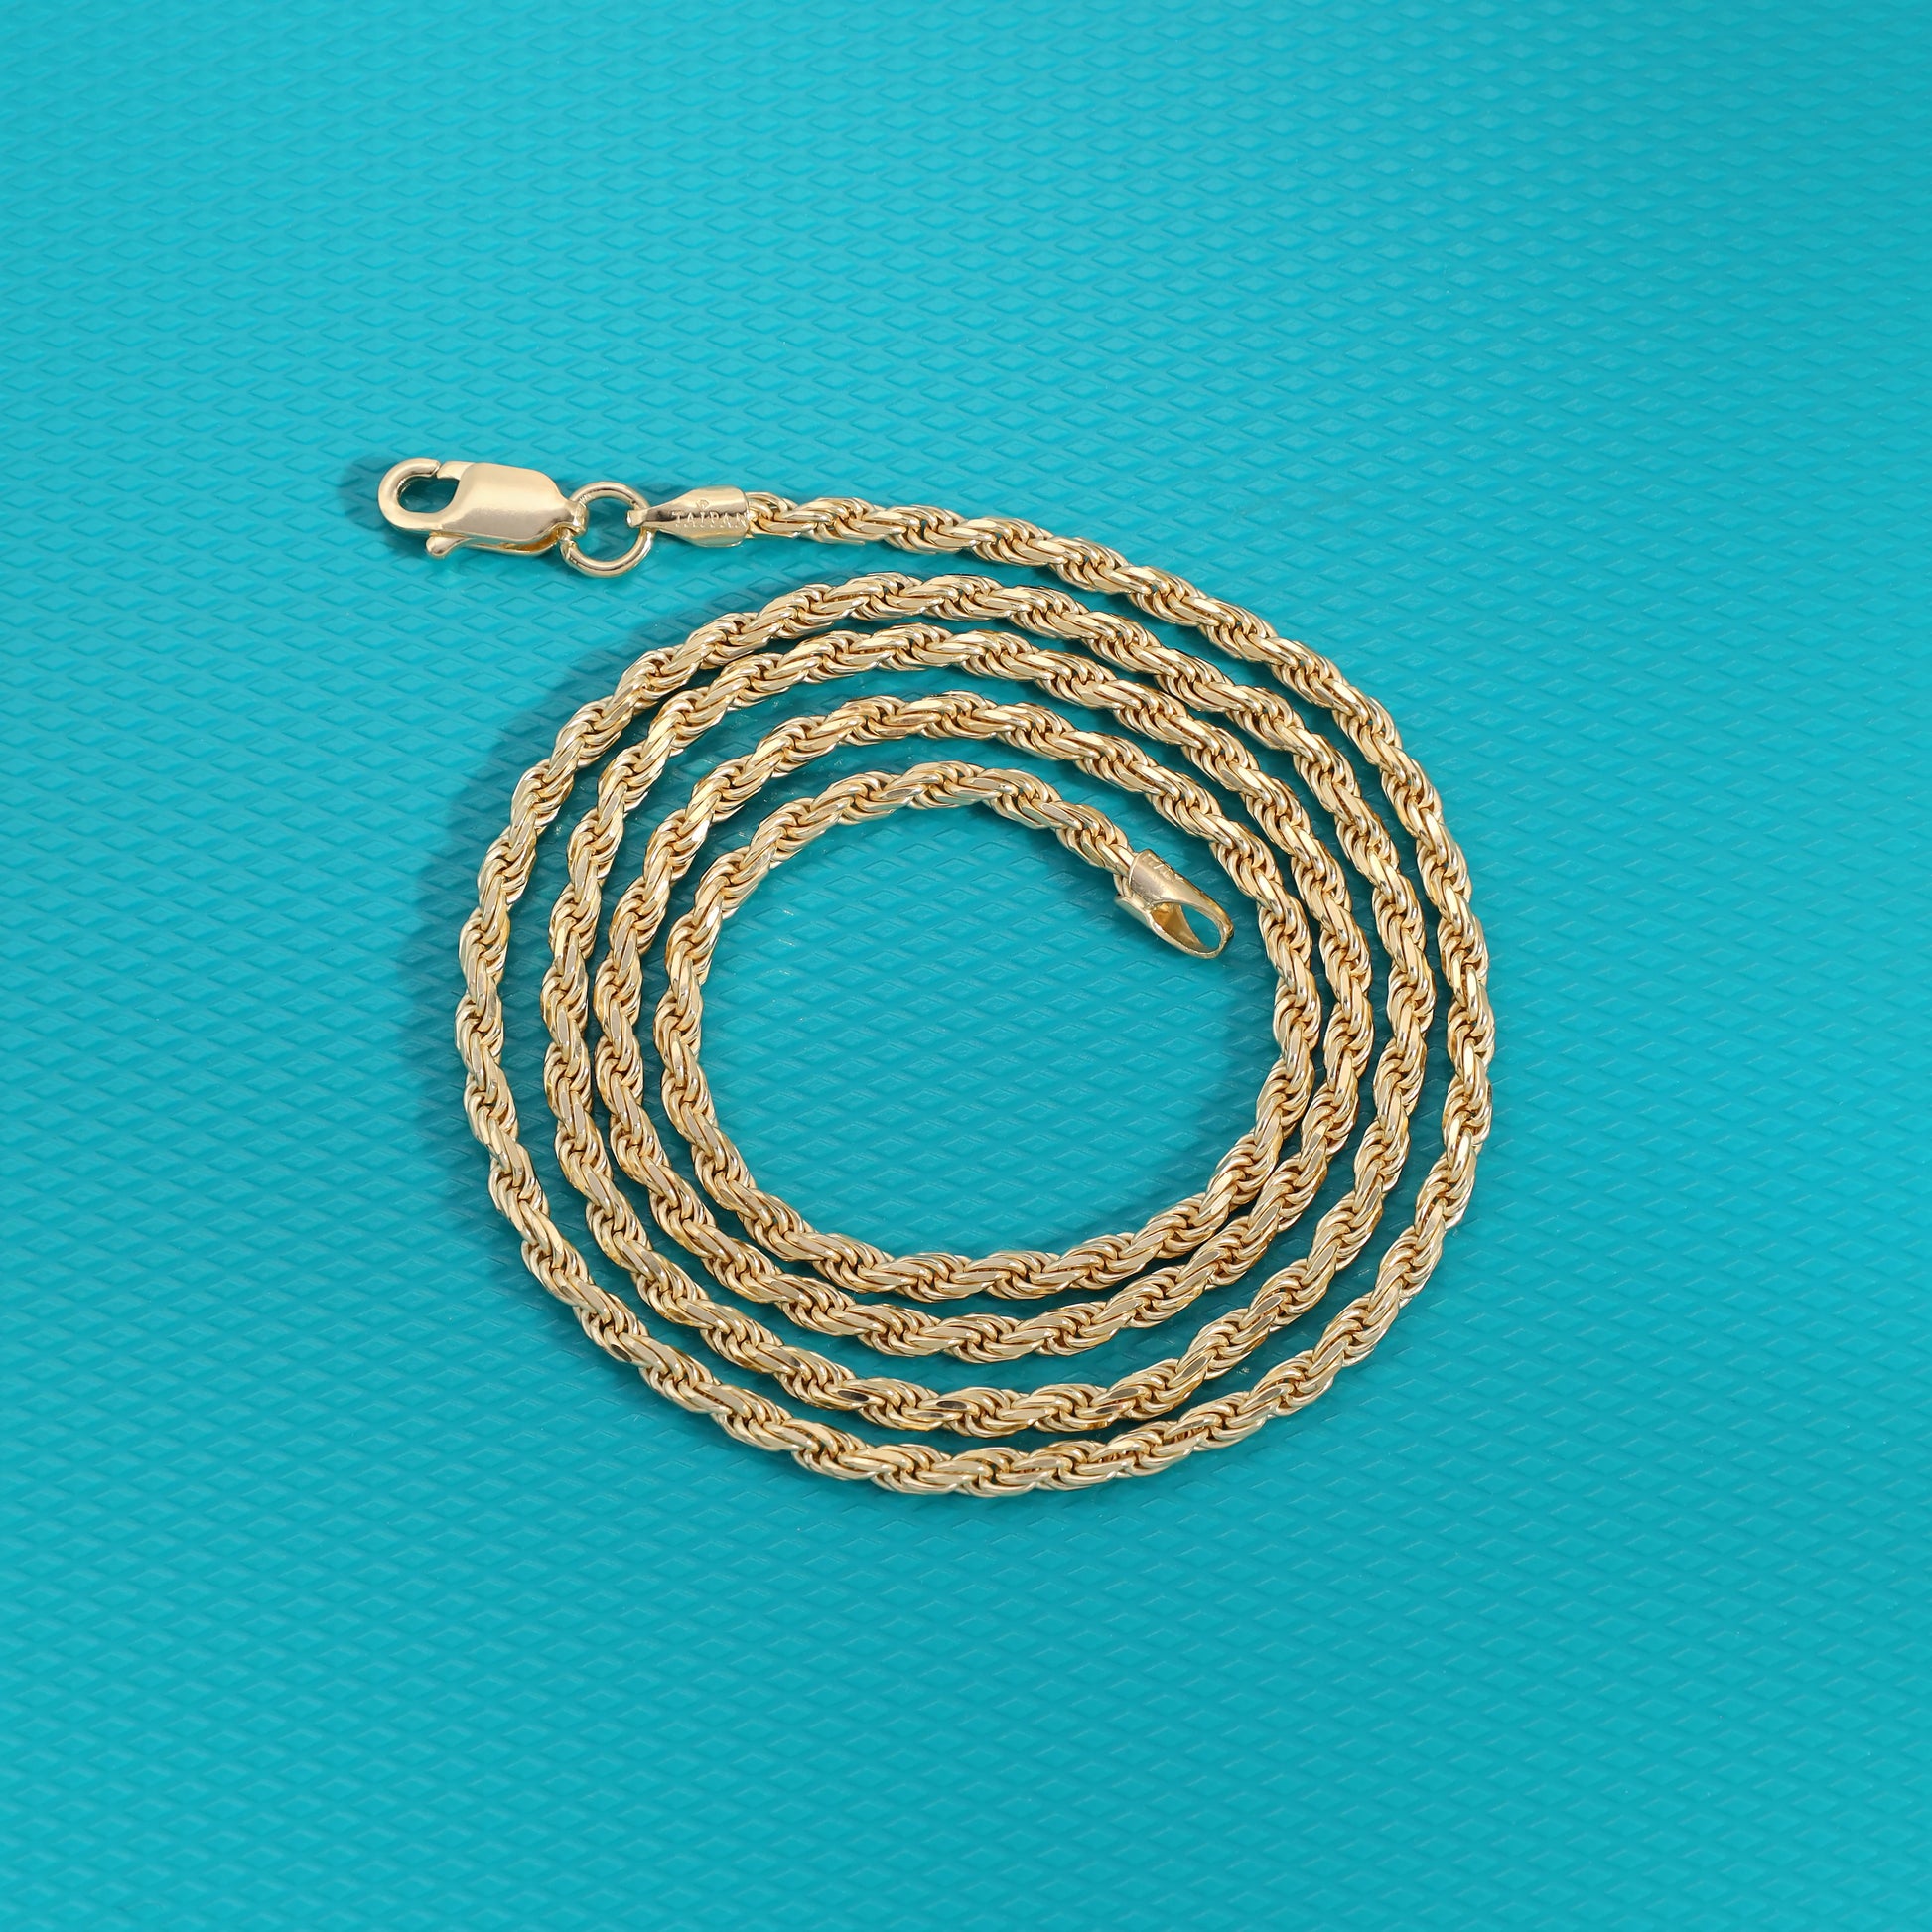 Vergoldete Kordelkette Rope Chain 2,3mm 50cm lang 925 Sterling Silber (K806) - Taipan Schmuck